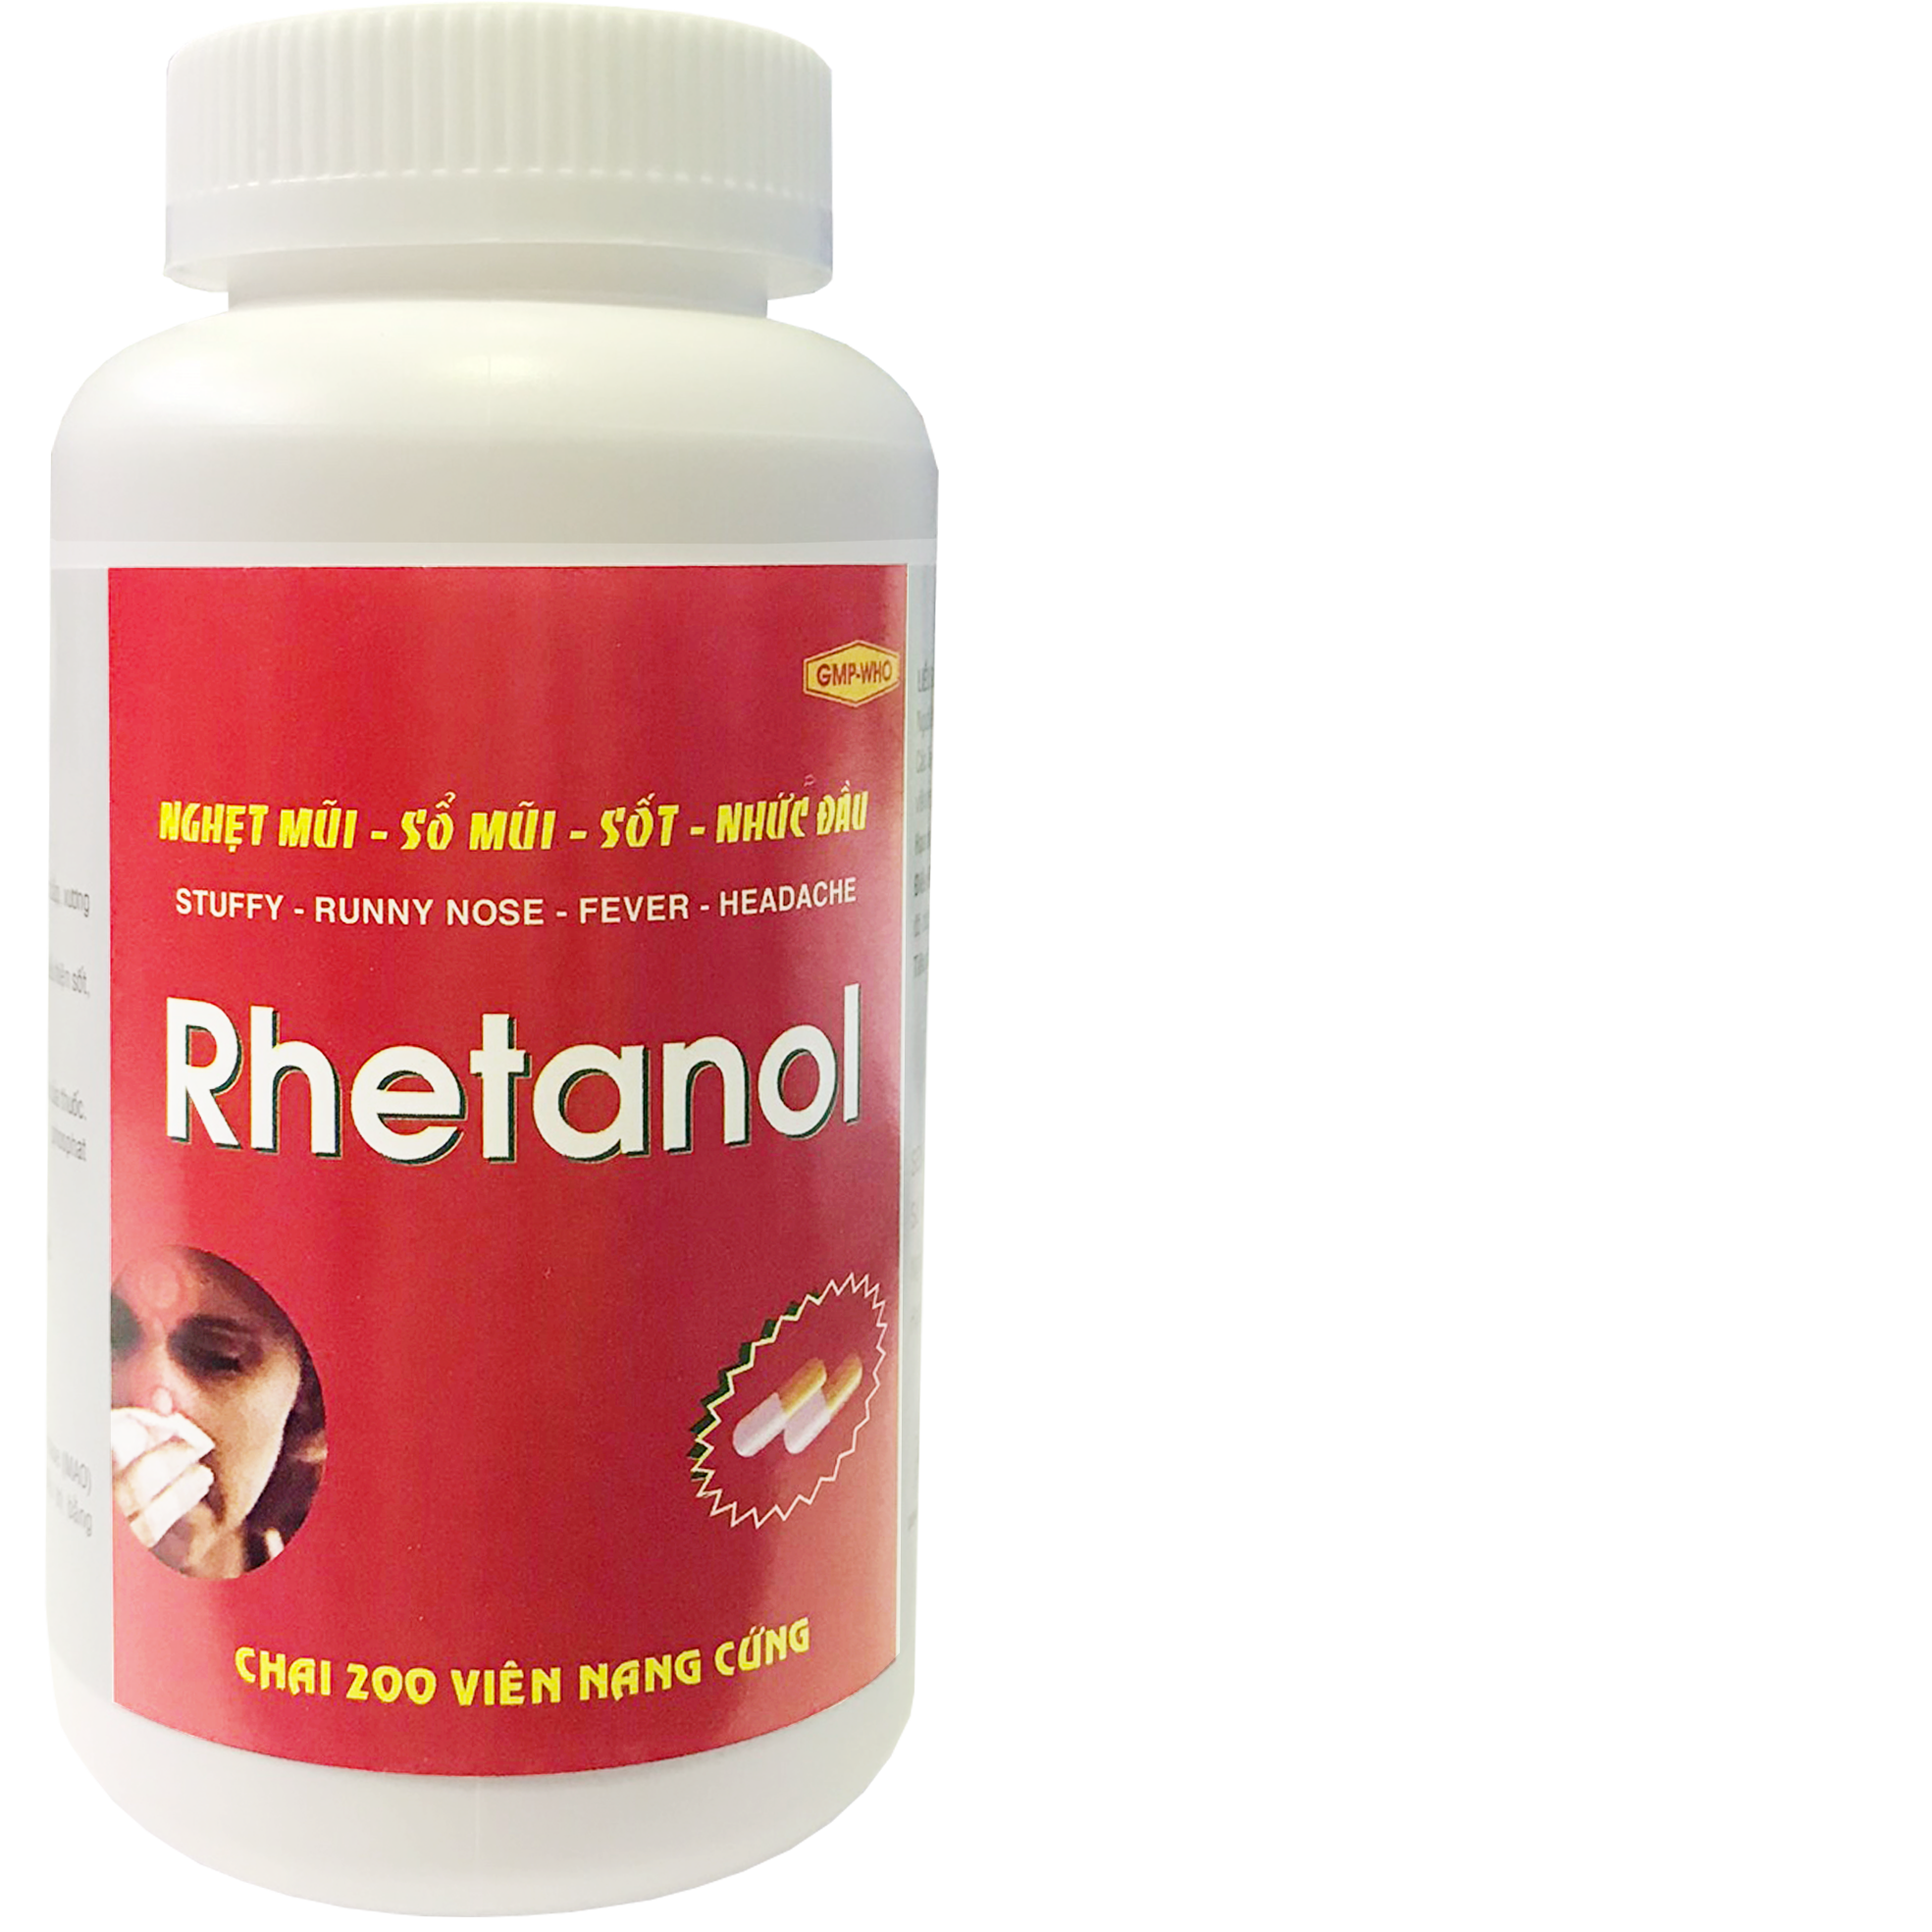 Rhetanol 500 (Paracetamol, Clorpheniramin Maleat) Donaipharm (C/200v)